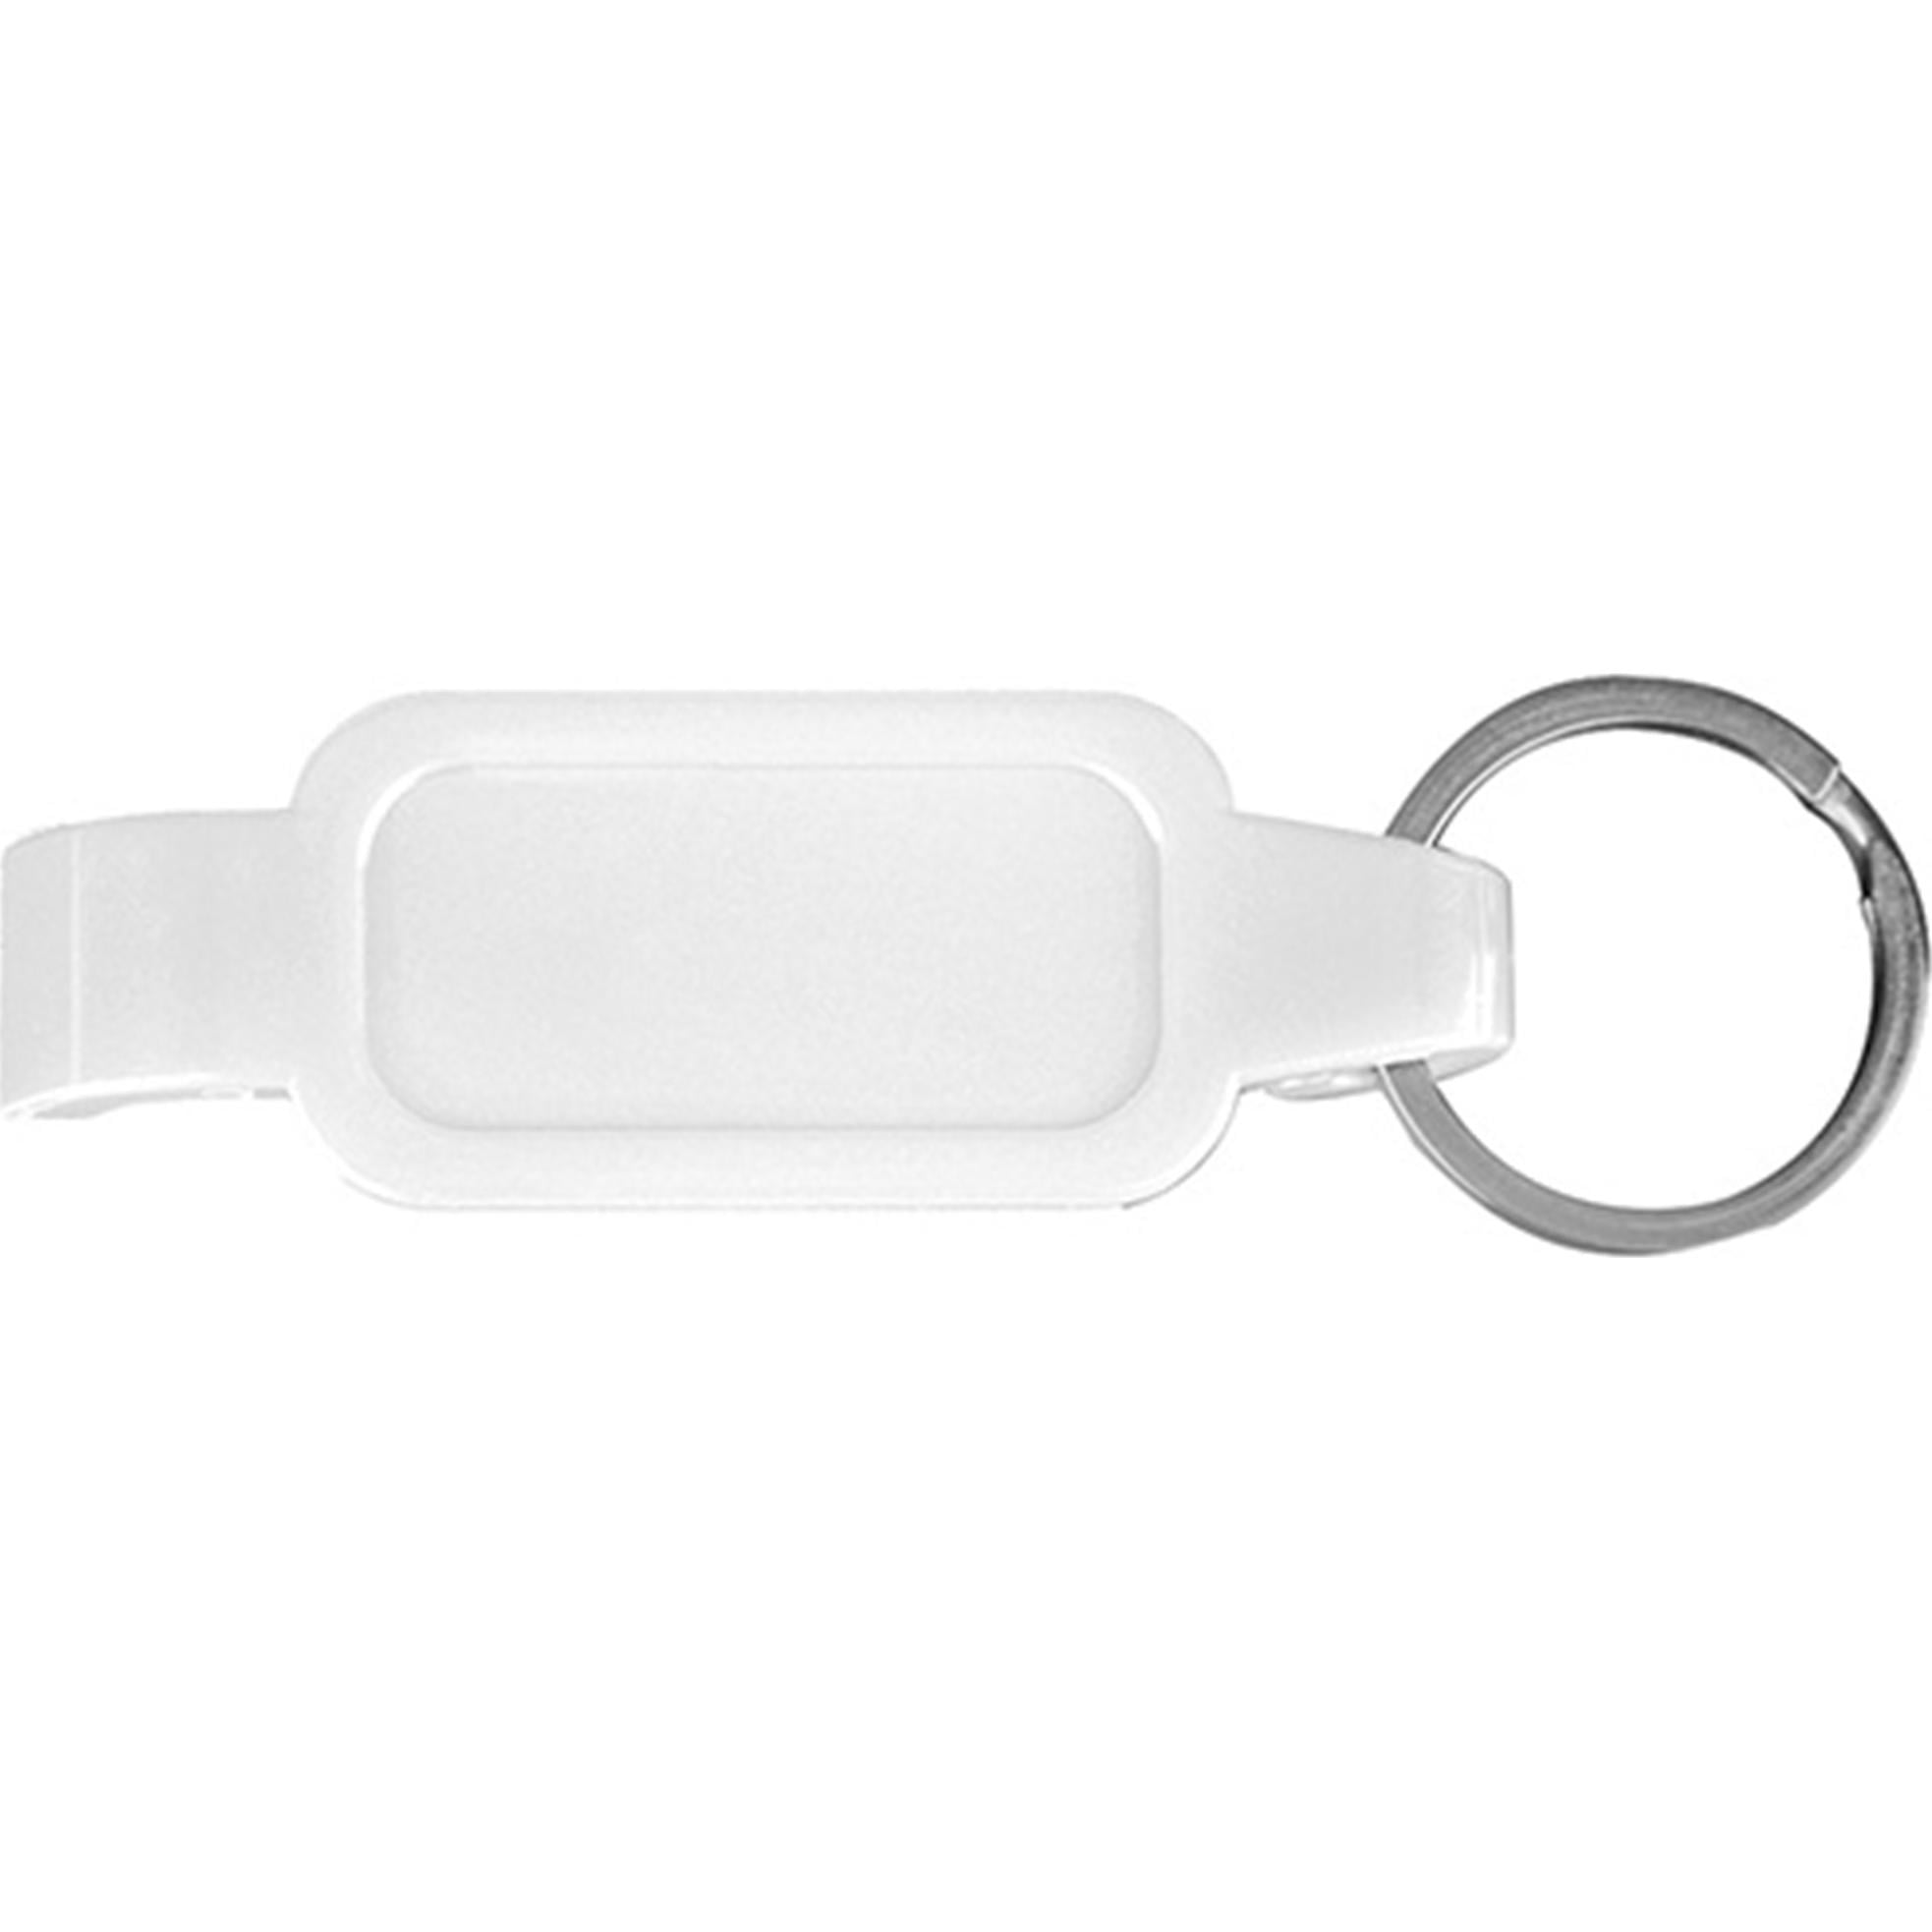 白色開瓶器配金屬開口環鑰匙扣